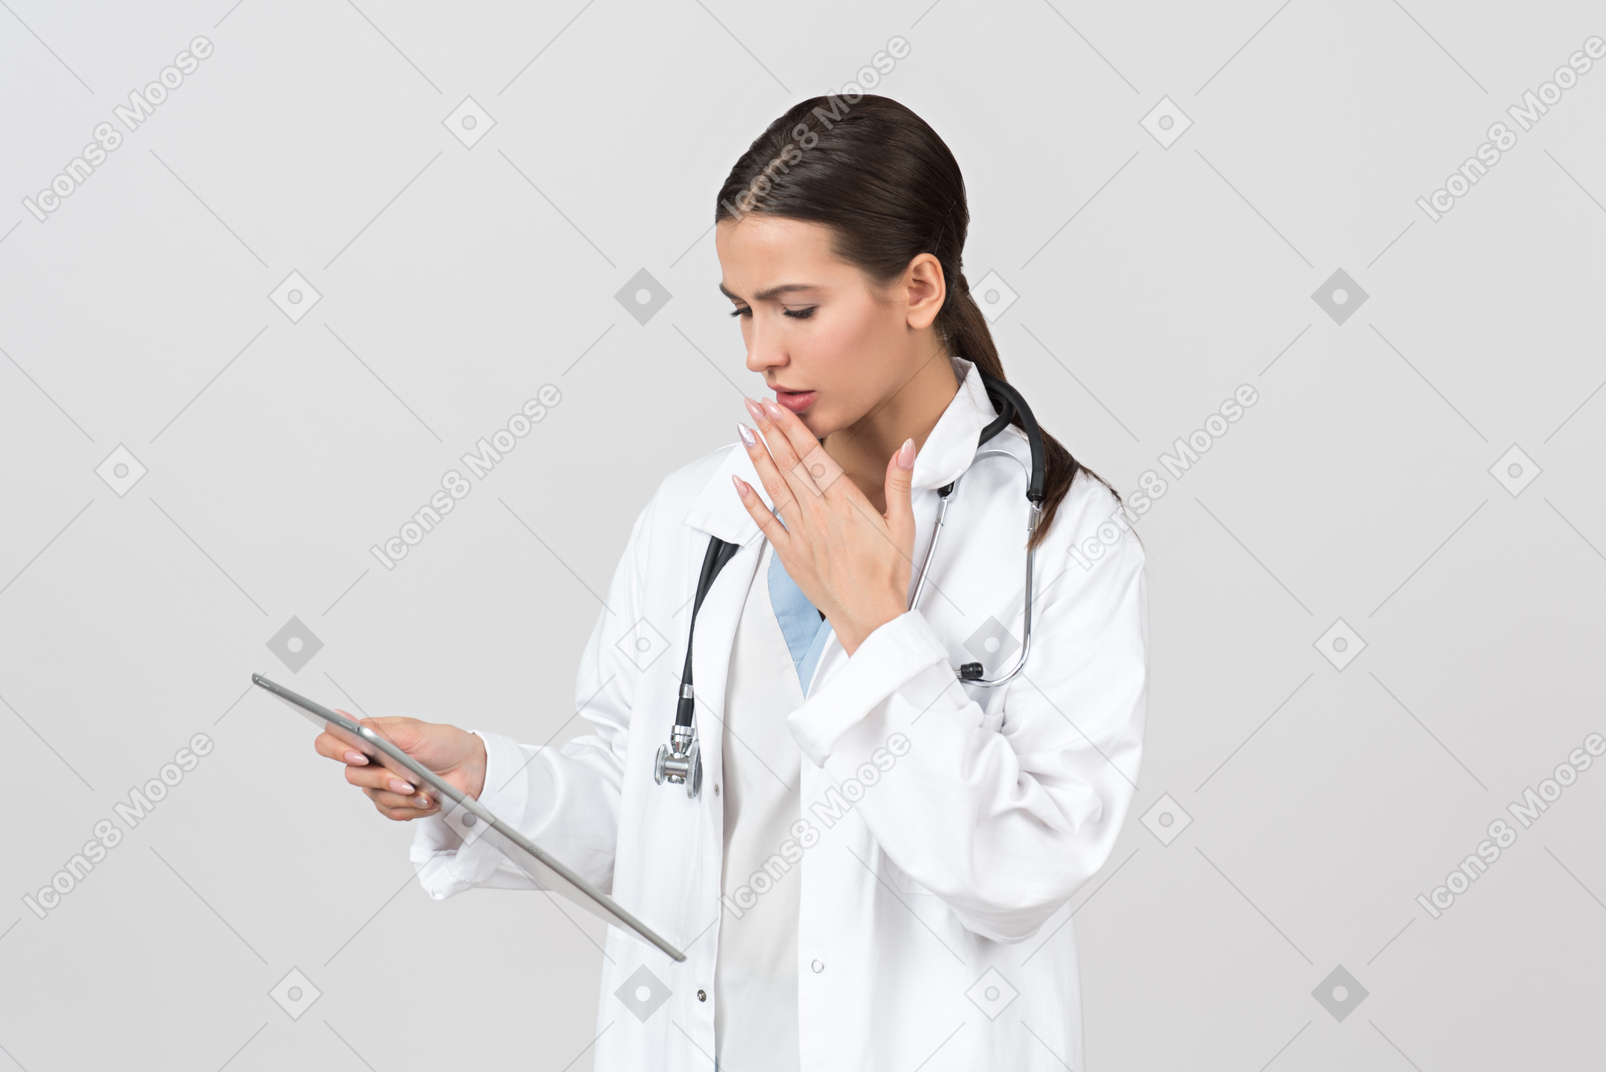 Doctora joven que parece preocupada por información en tableta digital